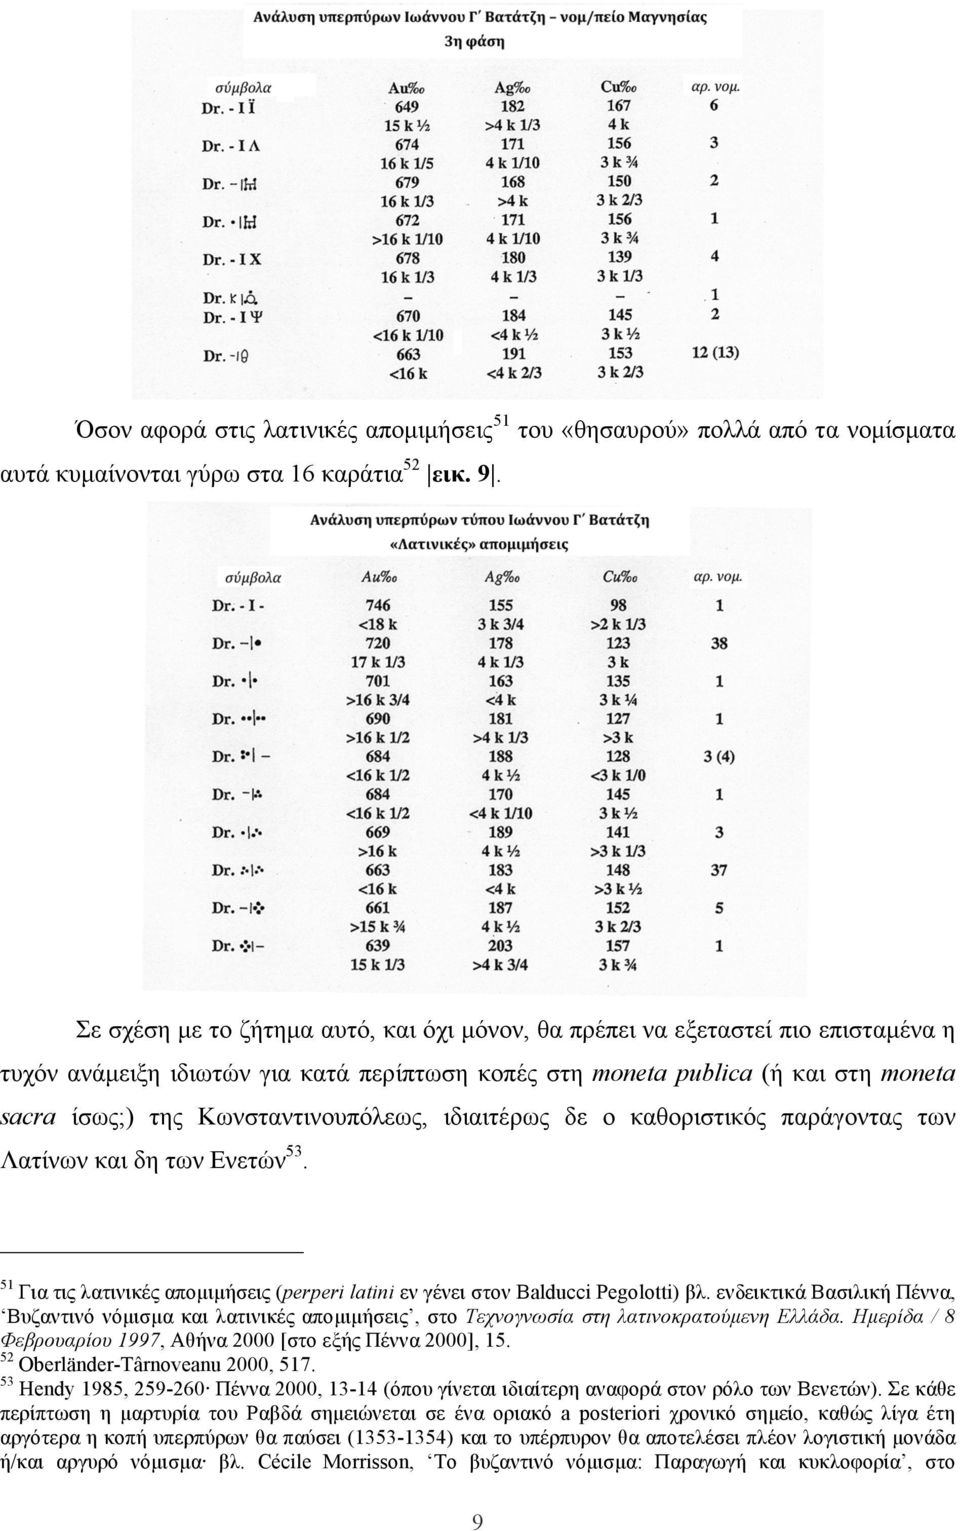 Κωνσταντινουπόλεως, ιδιαιτέρως δε ο καθοριστικός παράγοντας των Λατίνων και δη των Ενετών 53. 51 Για τις λατινικές αποµιµήσεις (perperi latini εν γένει στον Balducci Pegolotti) βλ.